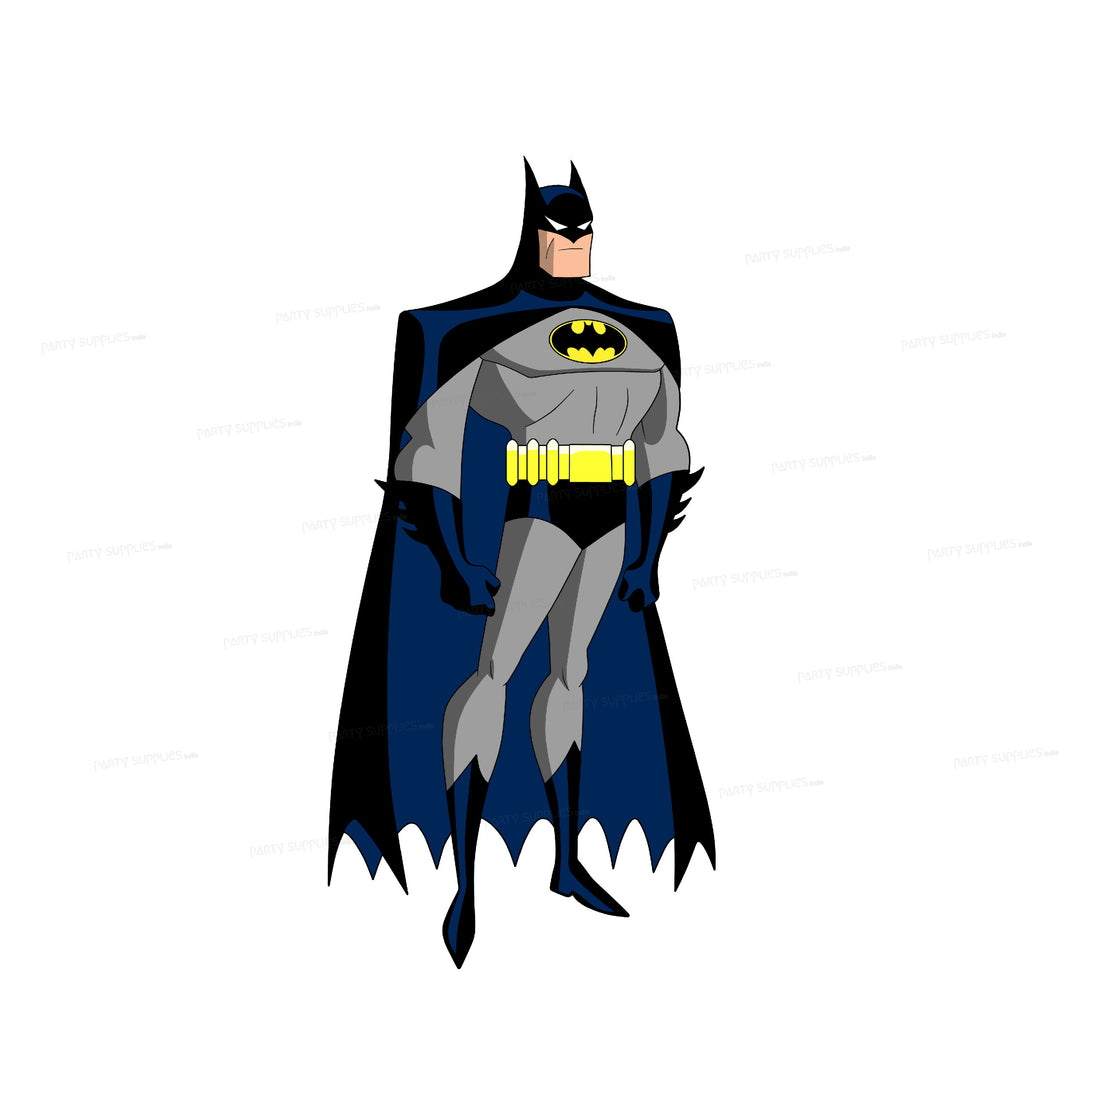 PSI Batman Theme Cutout - 09